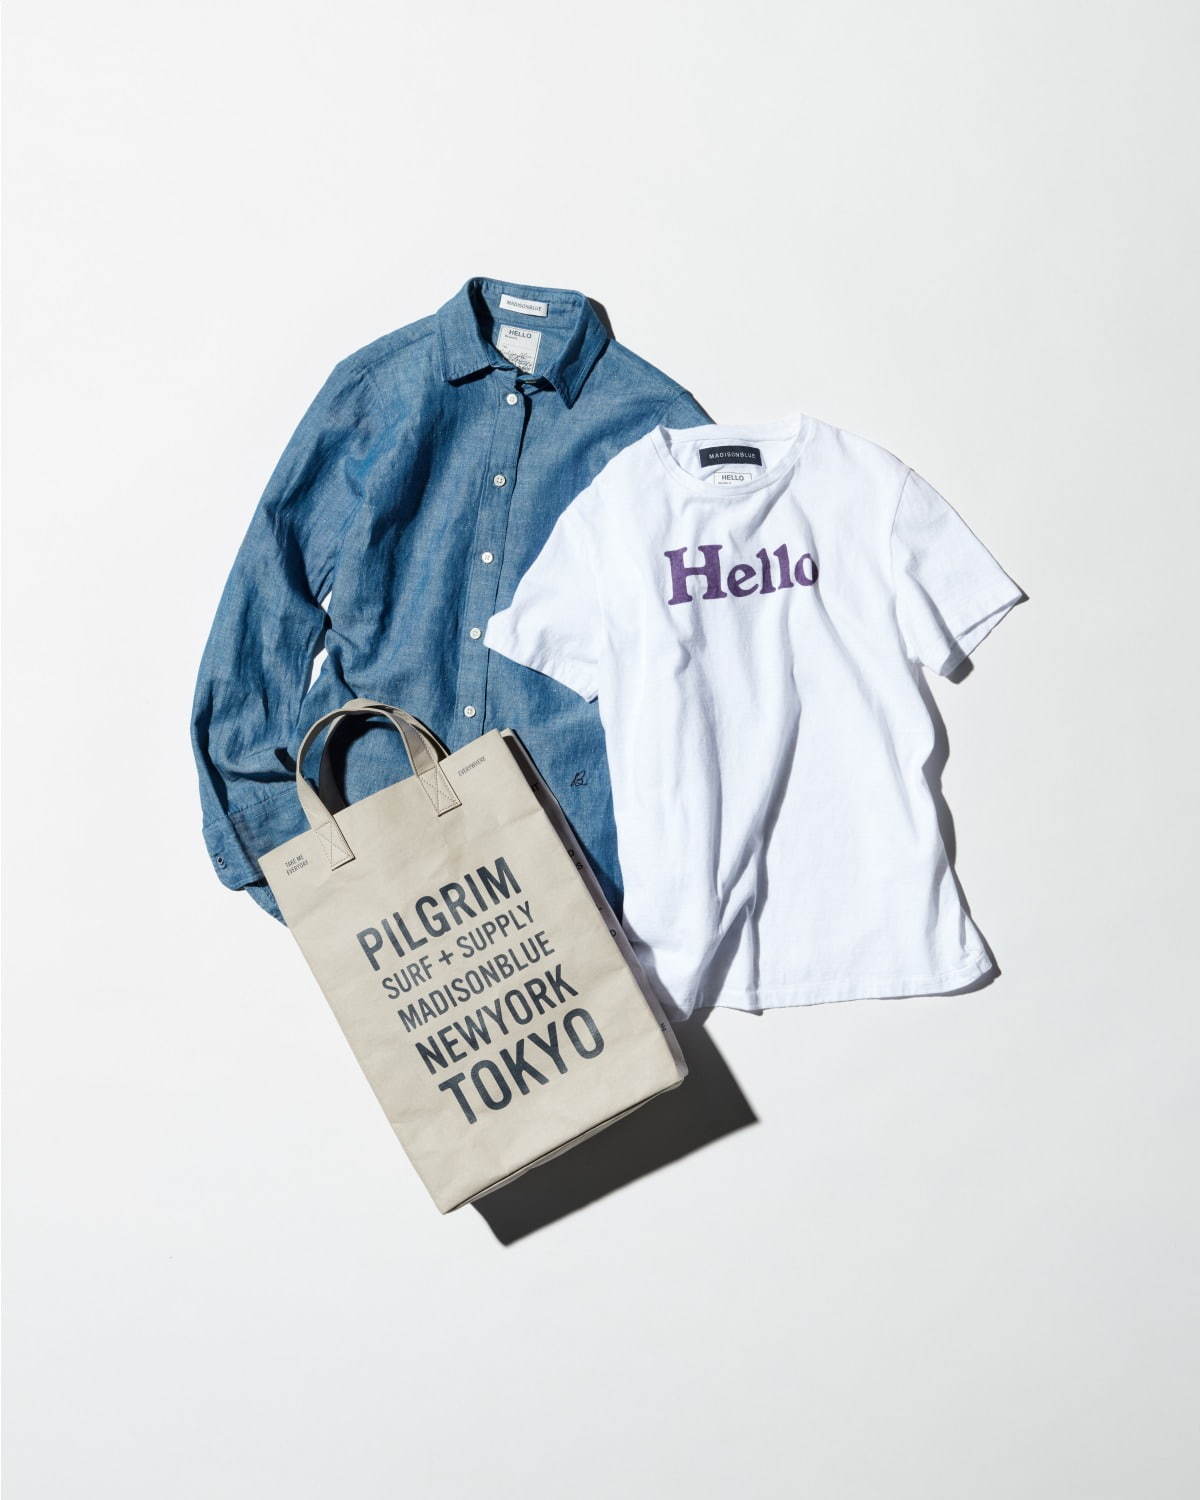 ピルグリム サーフ+サプライ」2号店が京都にオープン、関西初出店 - 限定カラーTシャツなど発売 - ファッションプレス